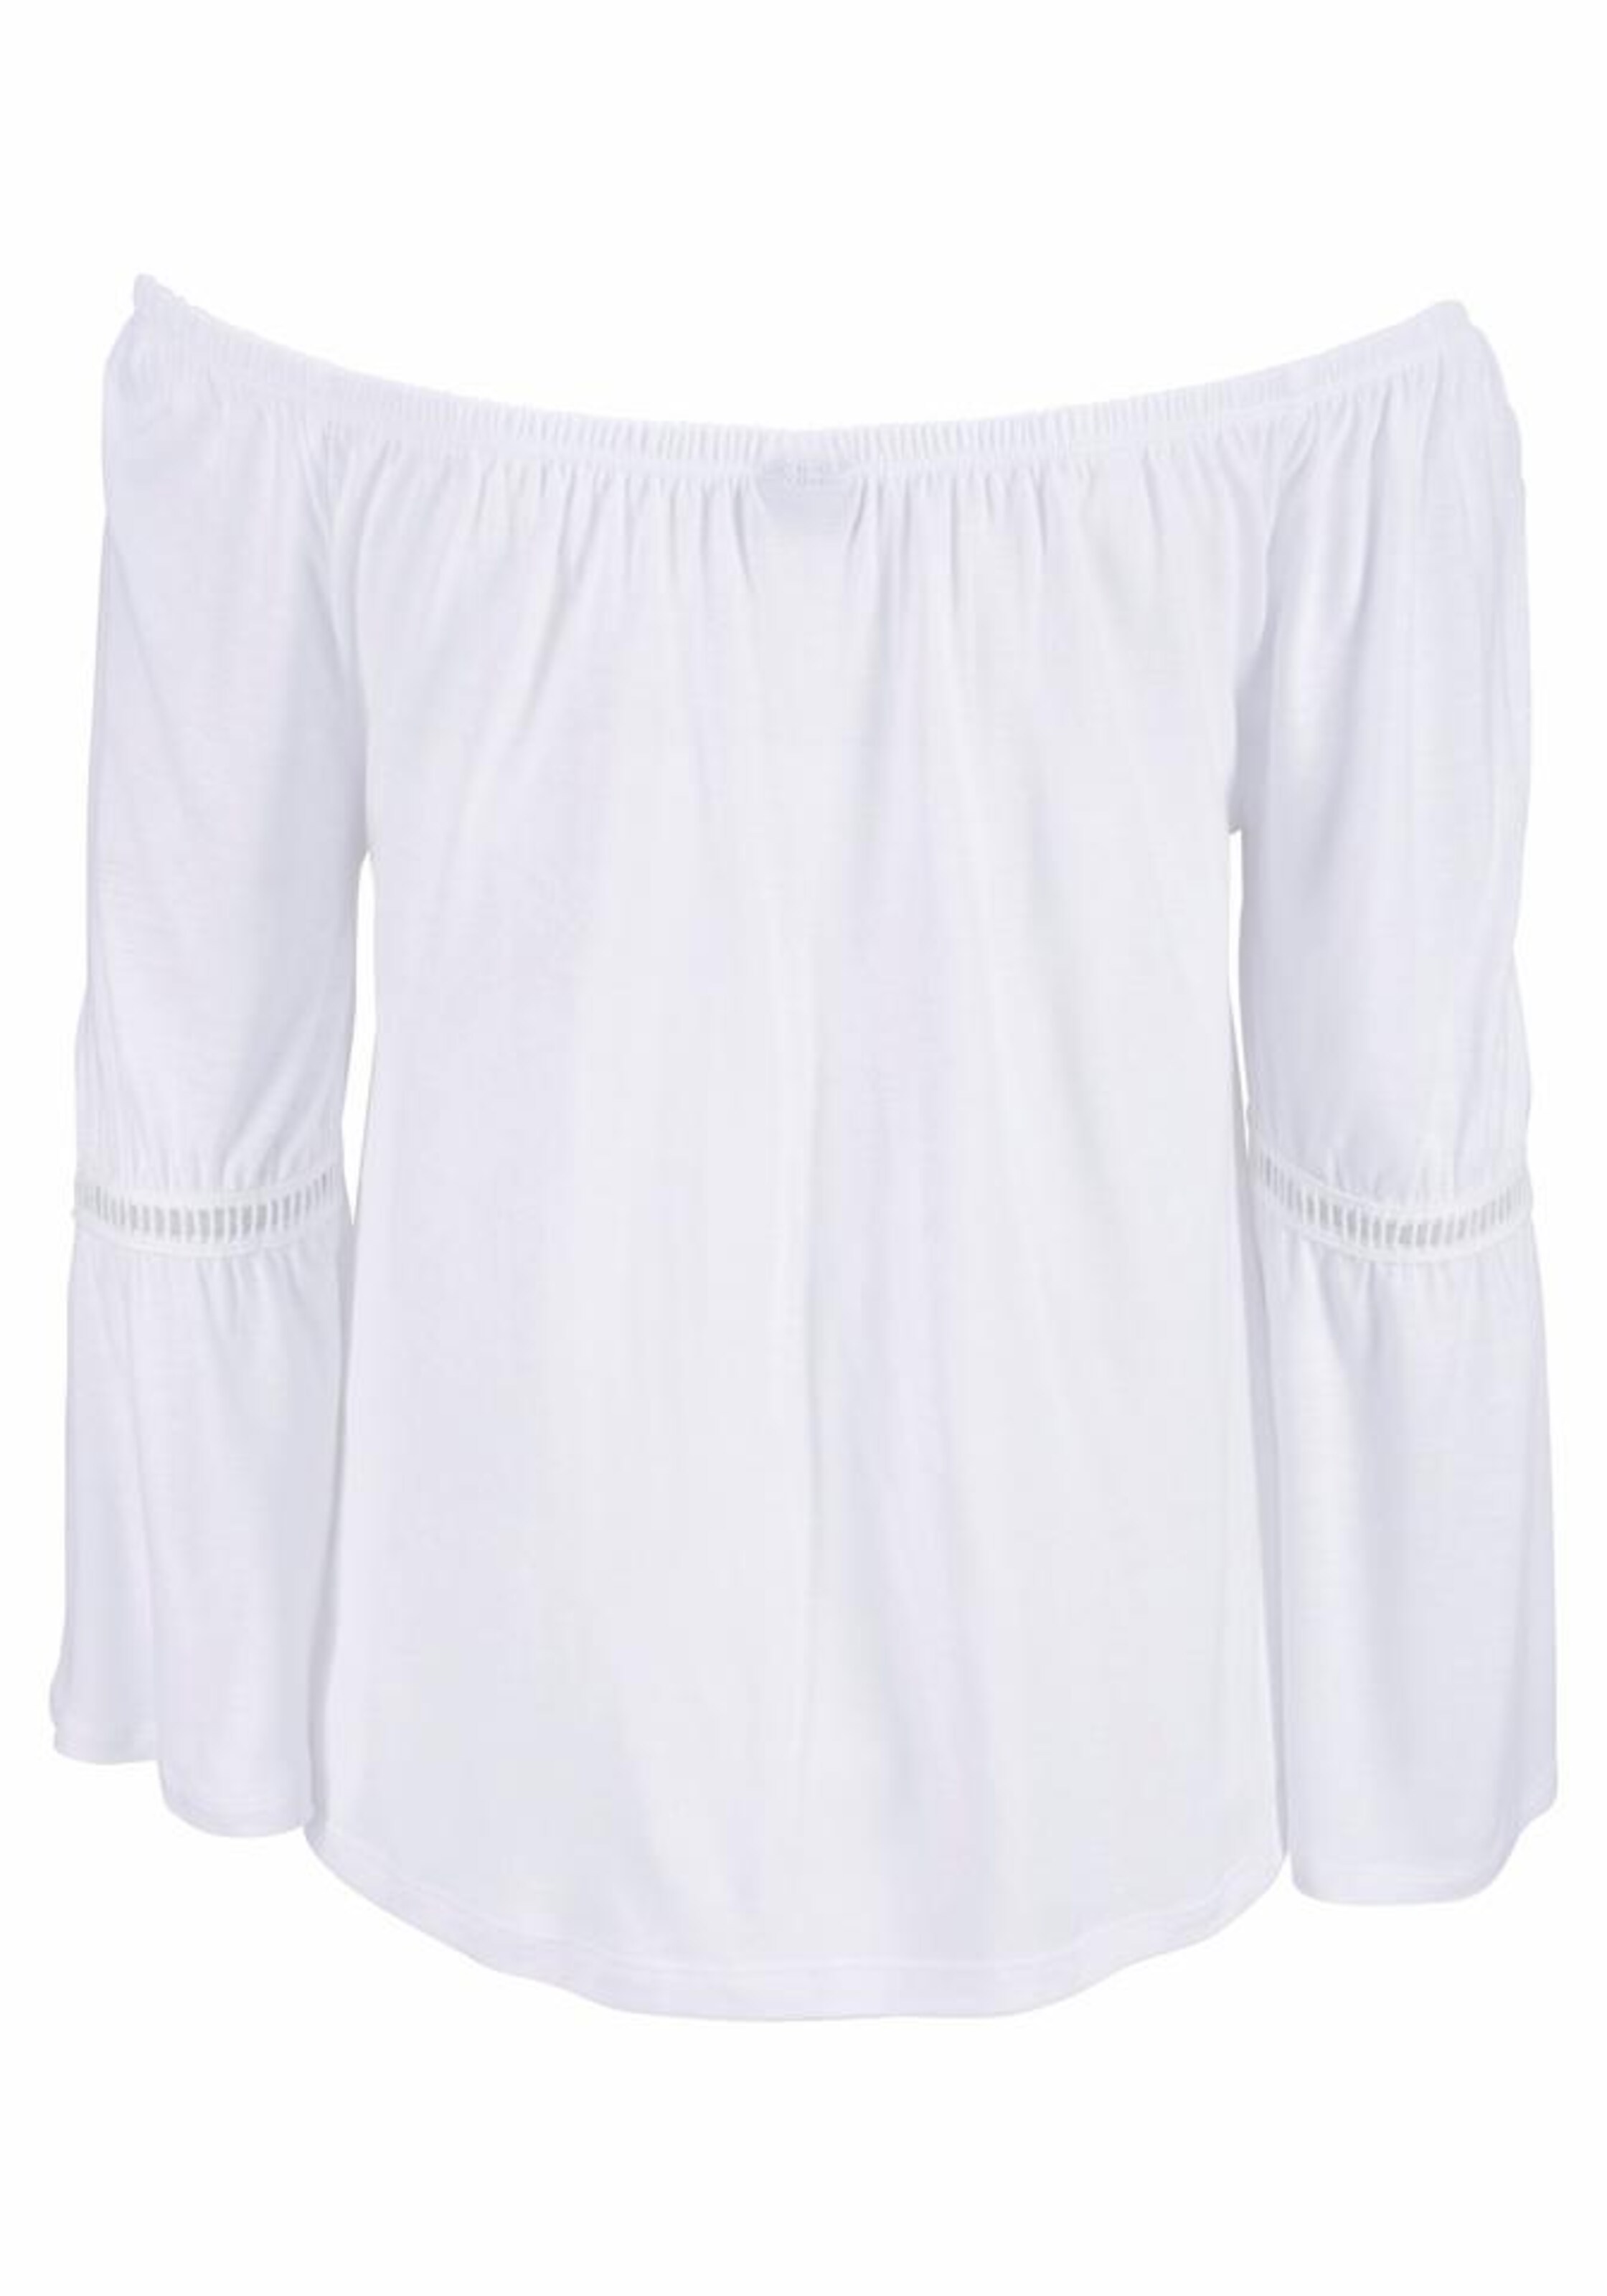 Frauen Shirts & Tops BUFFALO Strandshirt mit dezentem Frontdruck in Weiß - DG25954